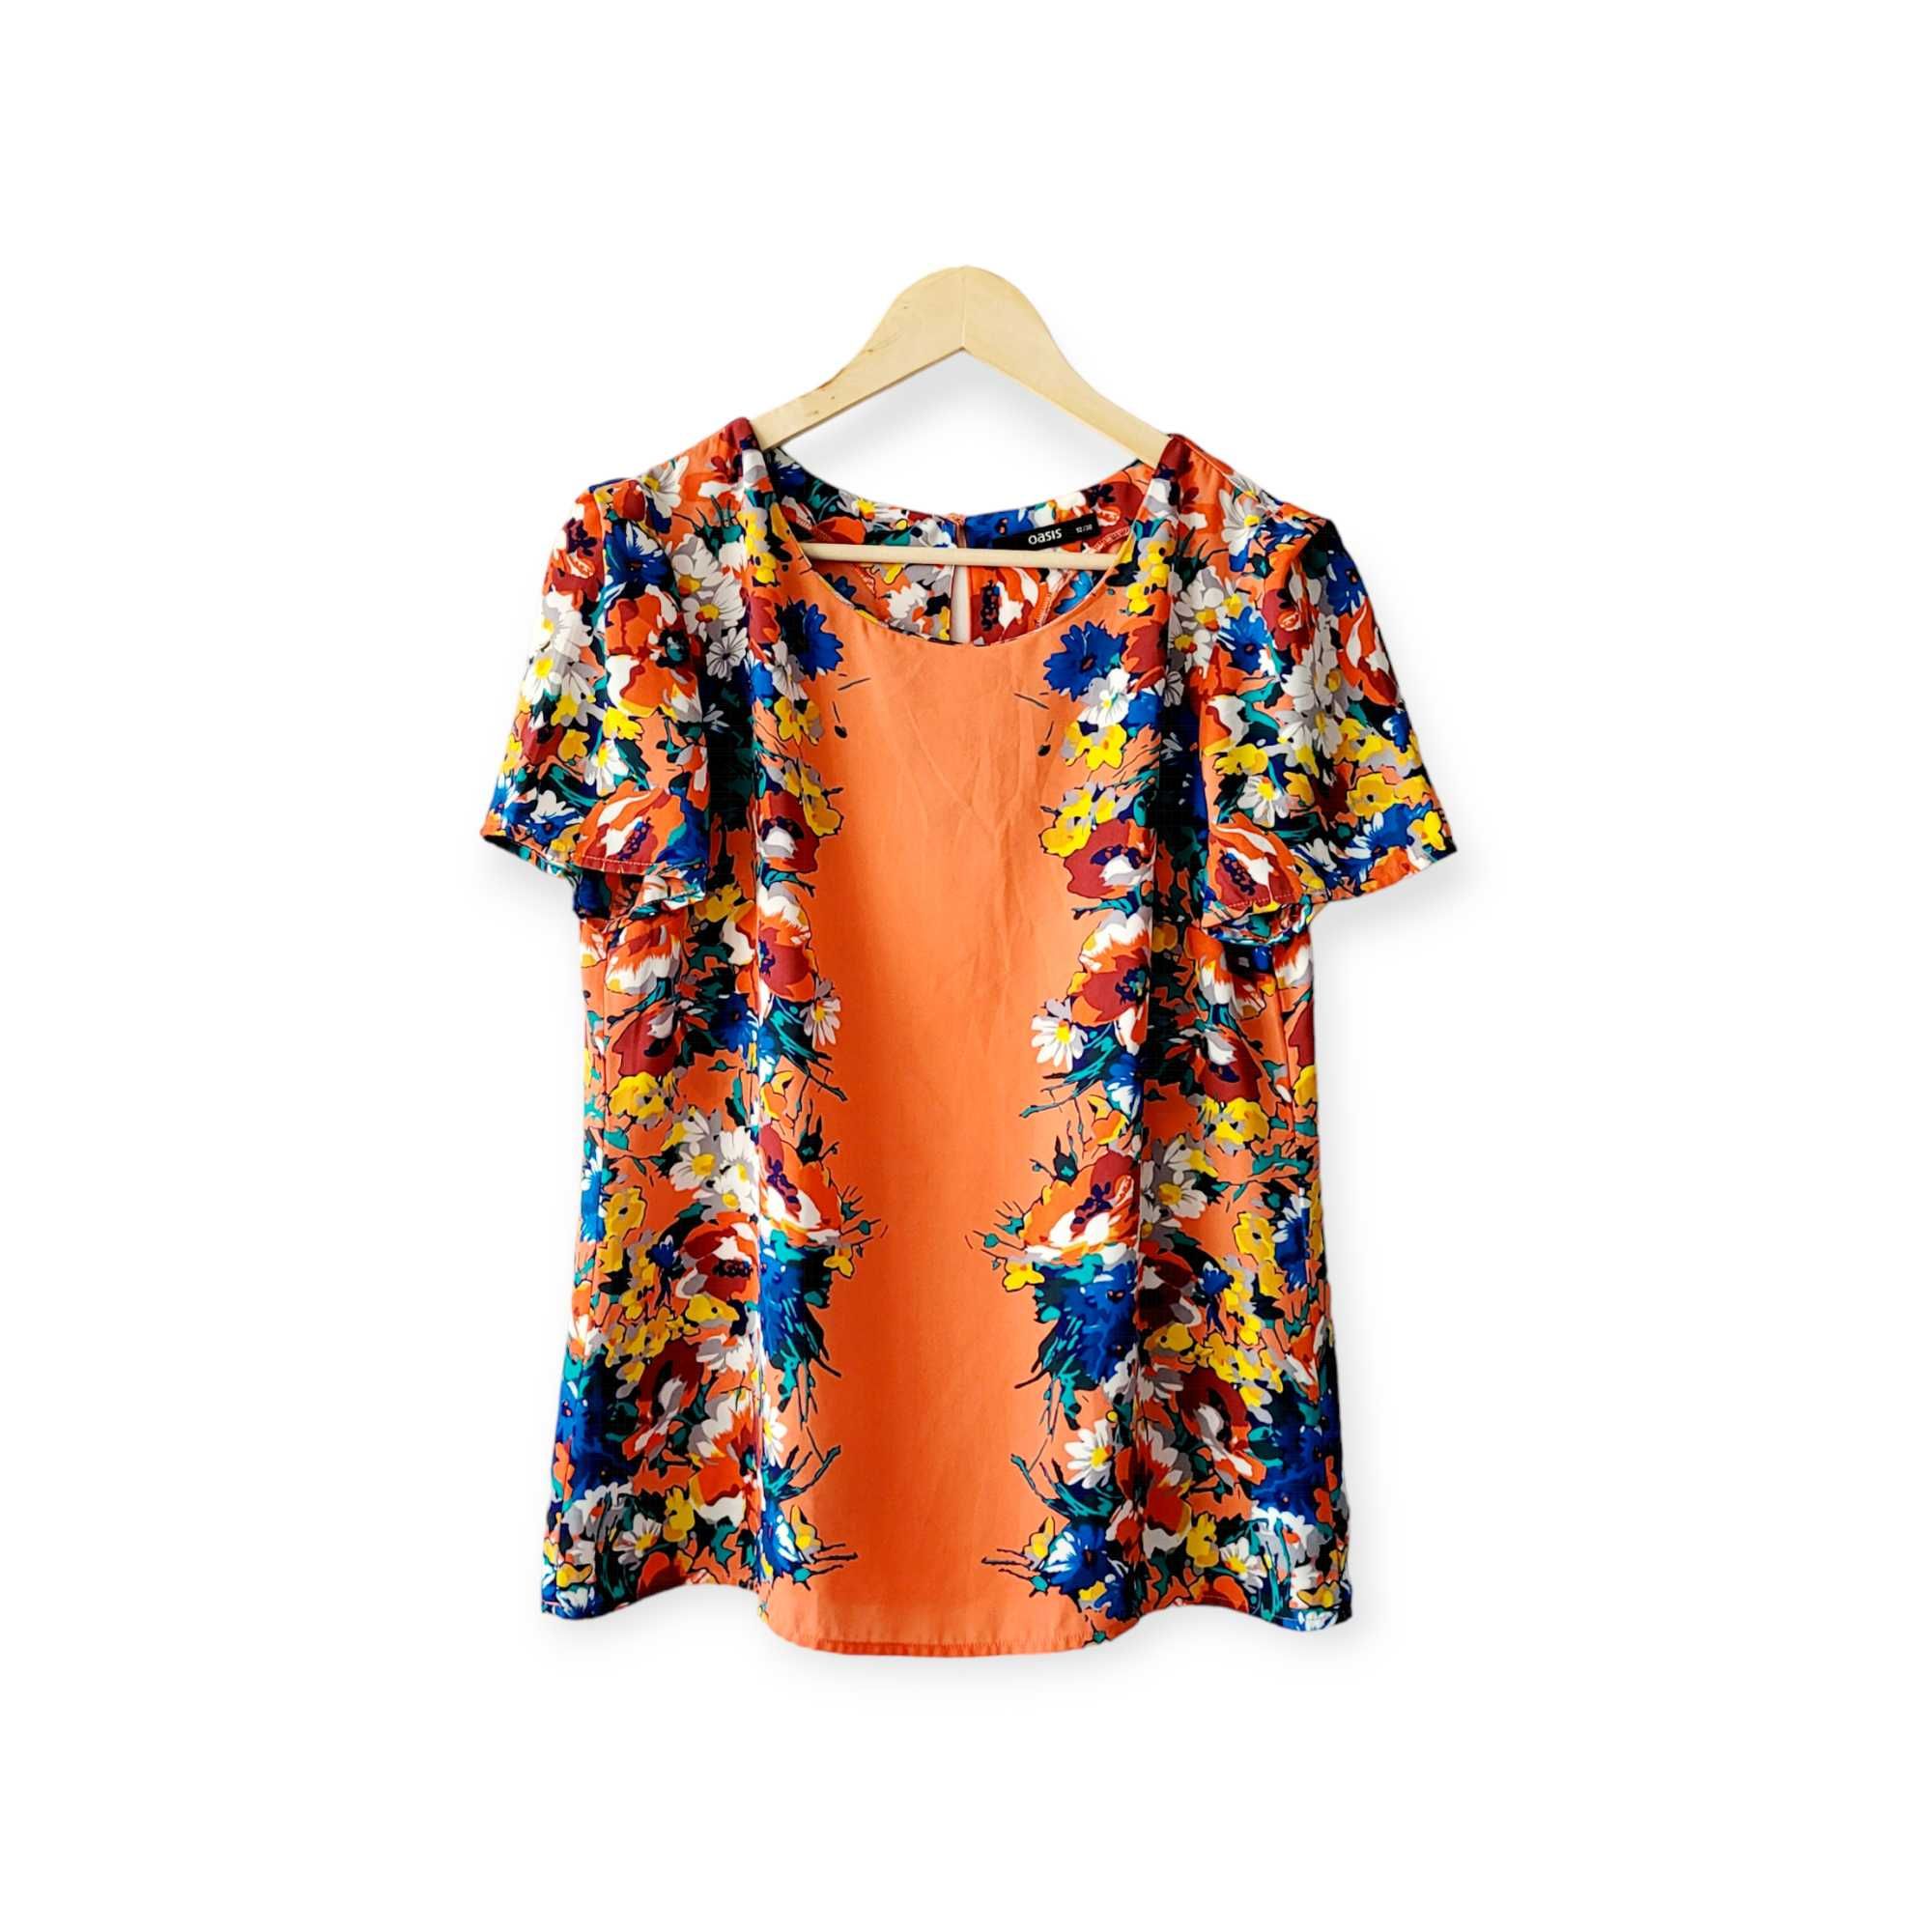 Pomarańczowa zwiewna bluzka damska M w kwiaty koszulka top boho lato